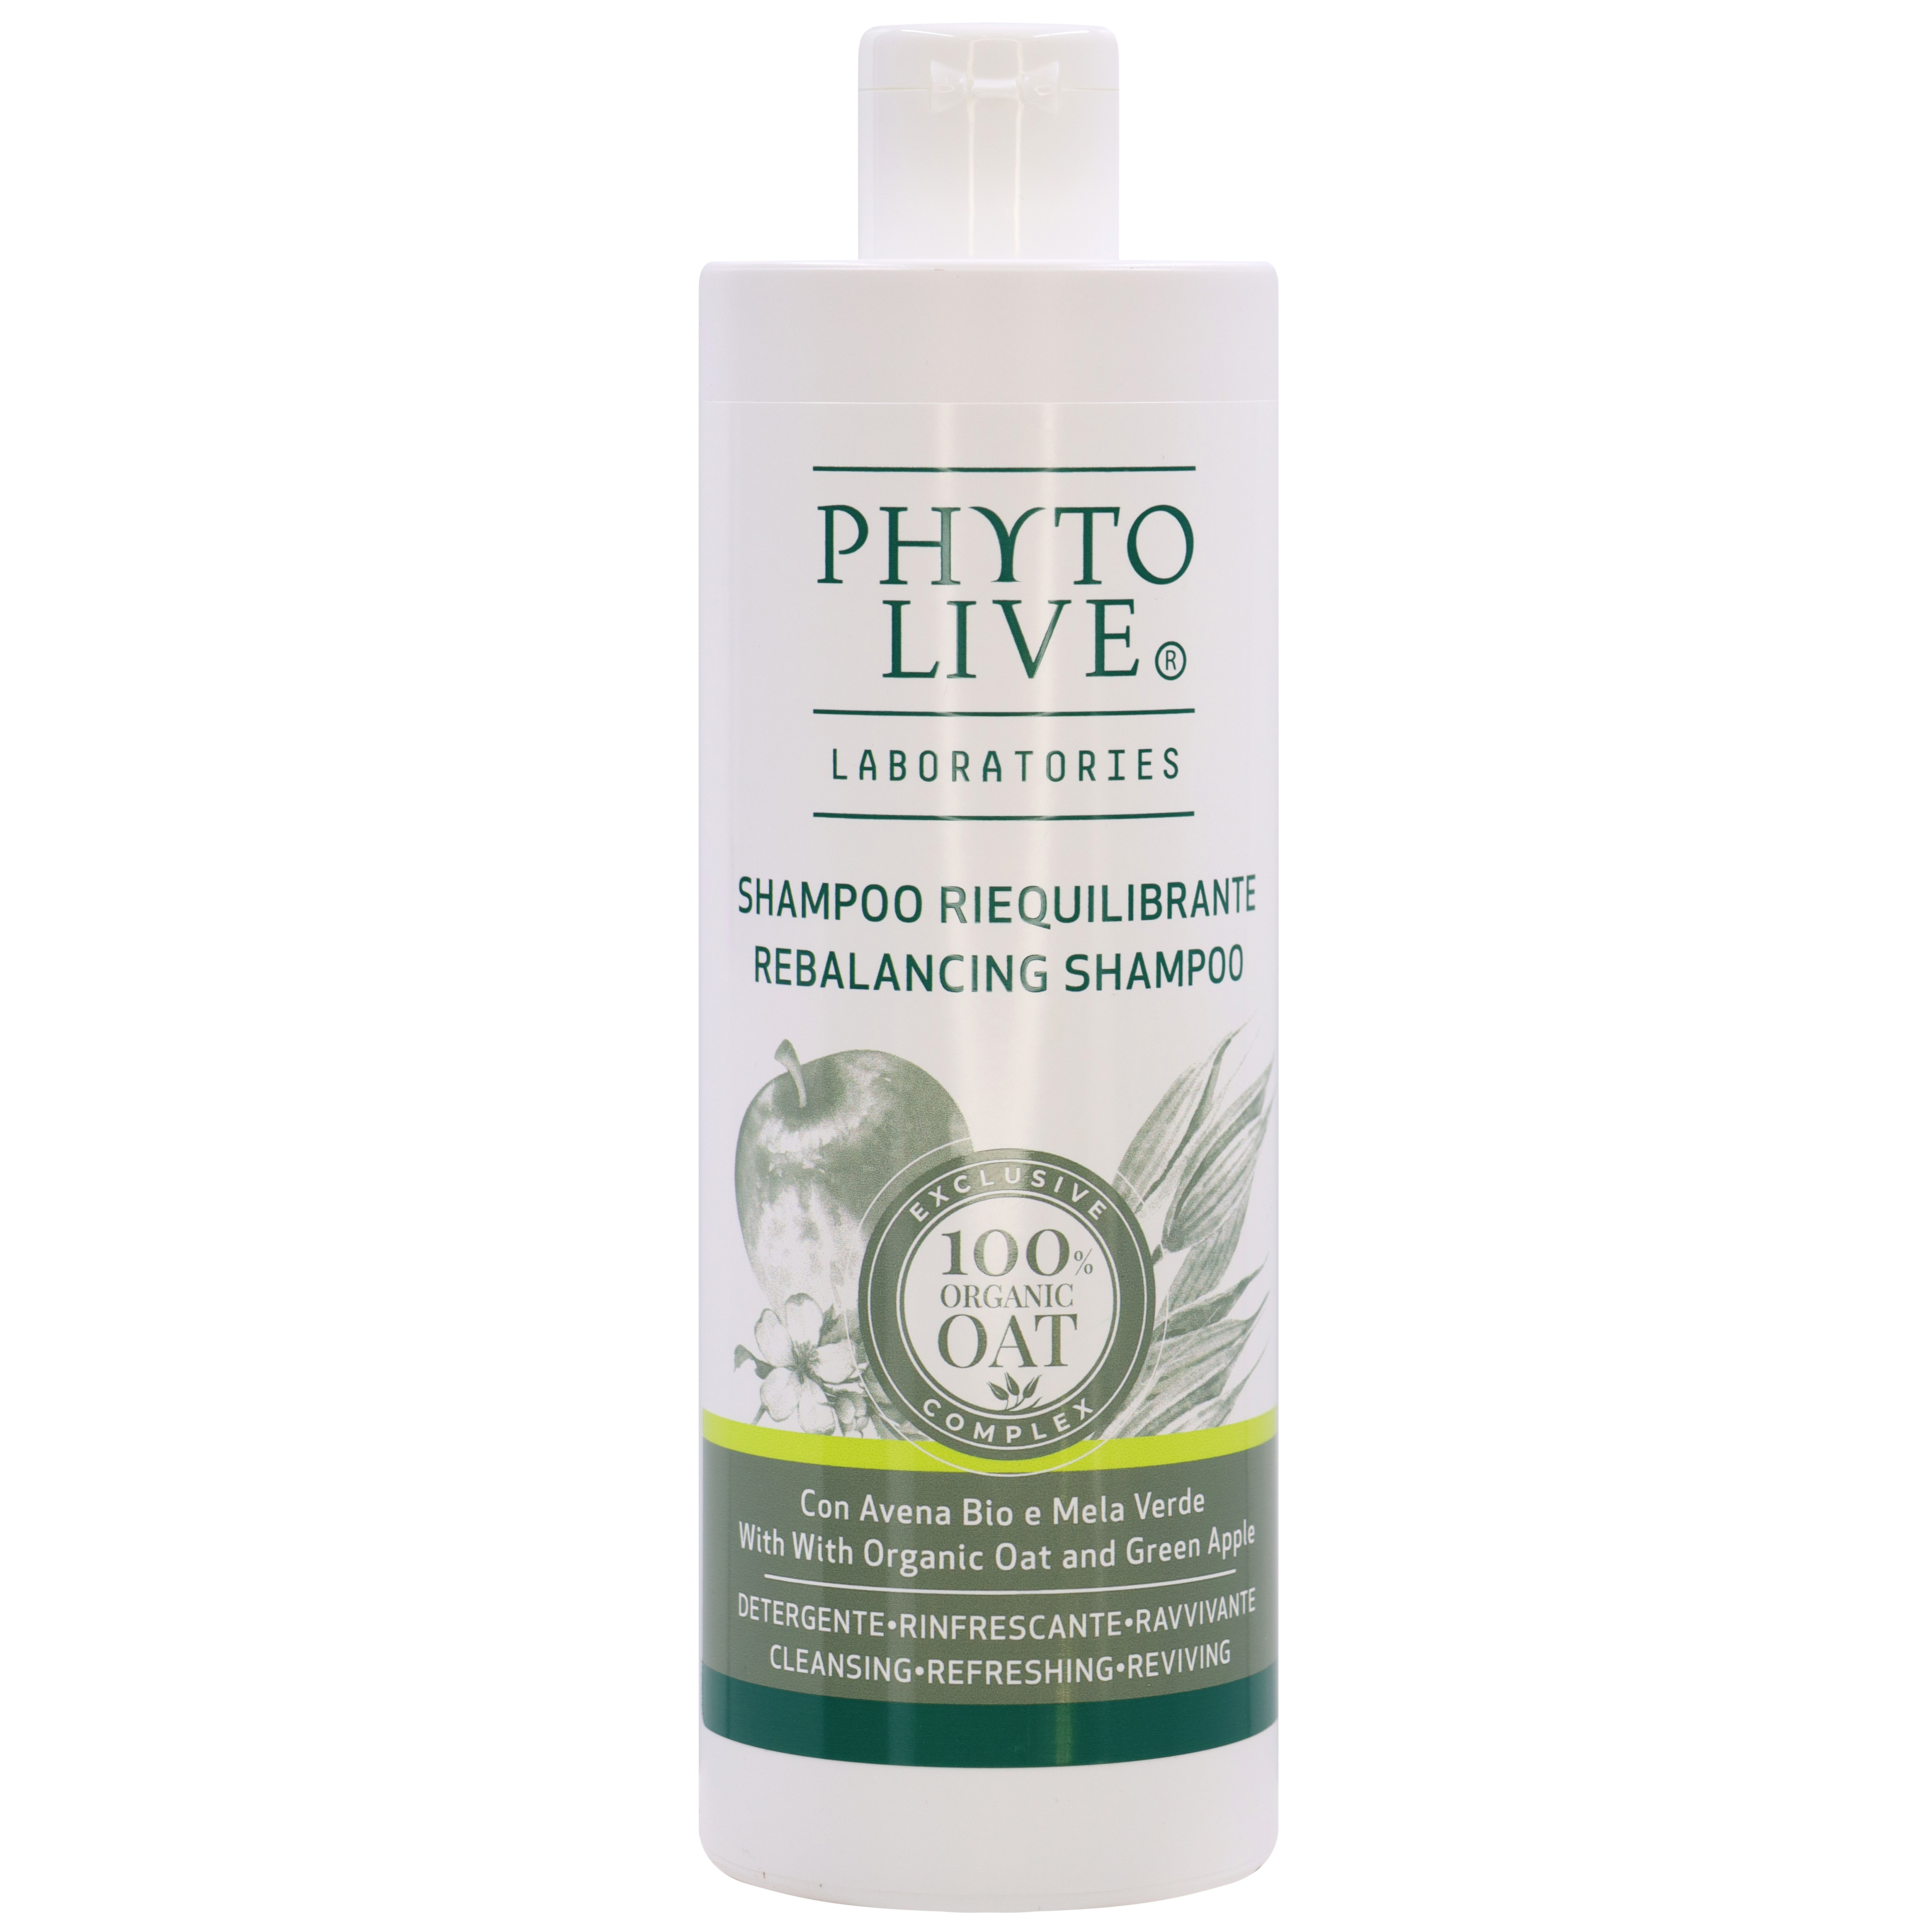 Шампунь PHYTO LIVE балансирующий с Органическим овсом и зеленым яблоком для жирных волос.